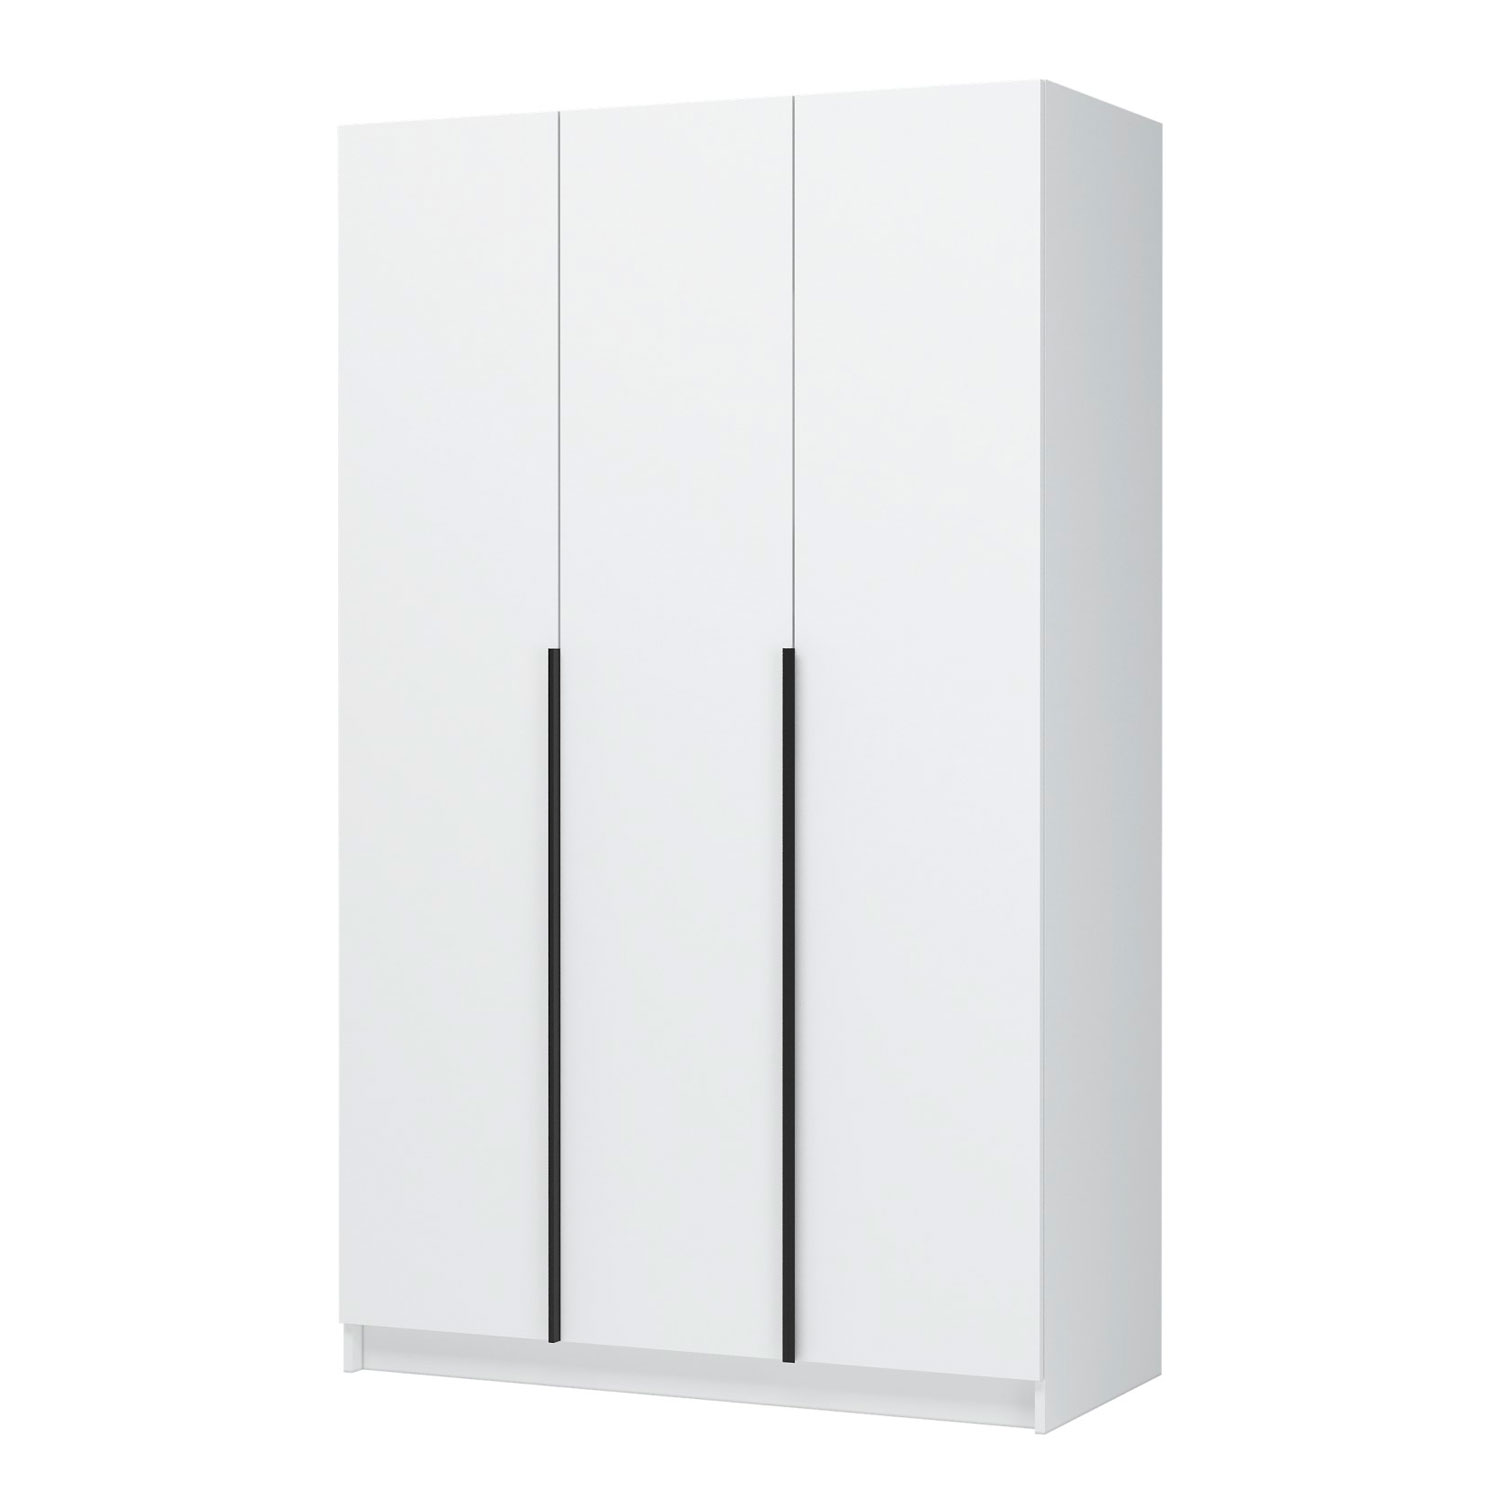 Шкаф для одежды ШК-02 Лион 3-х створчатый, белый